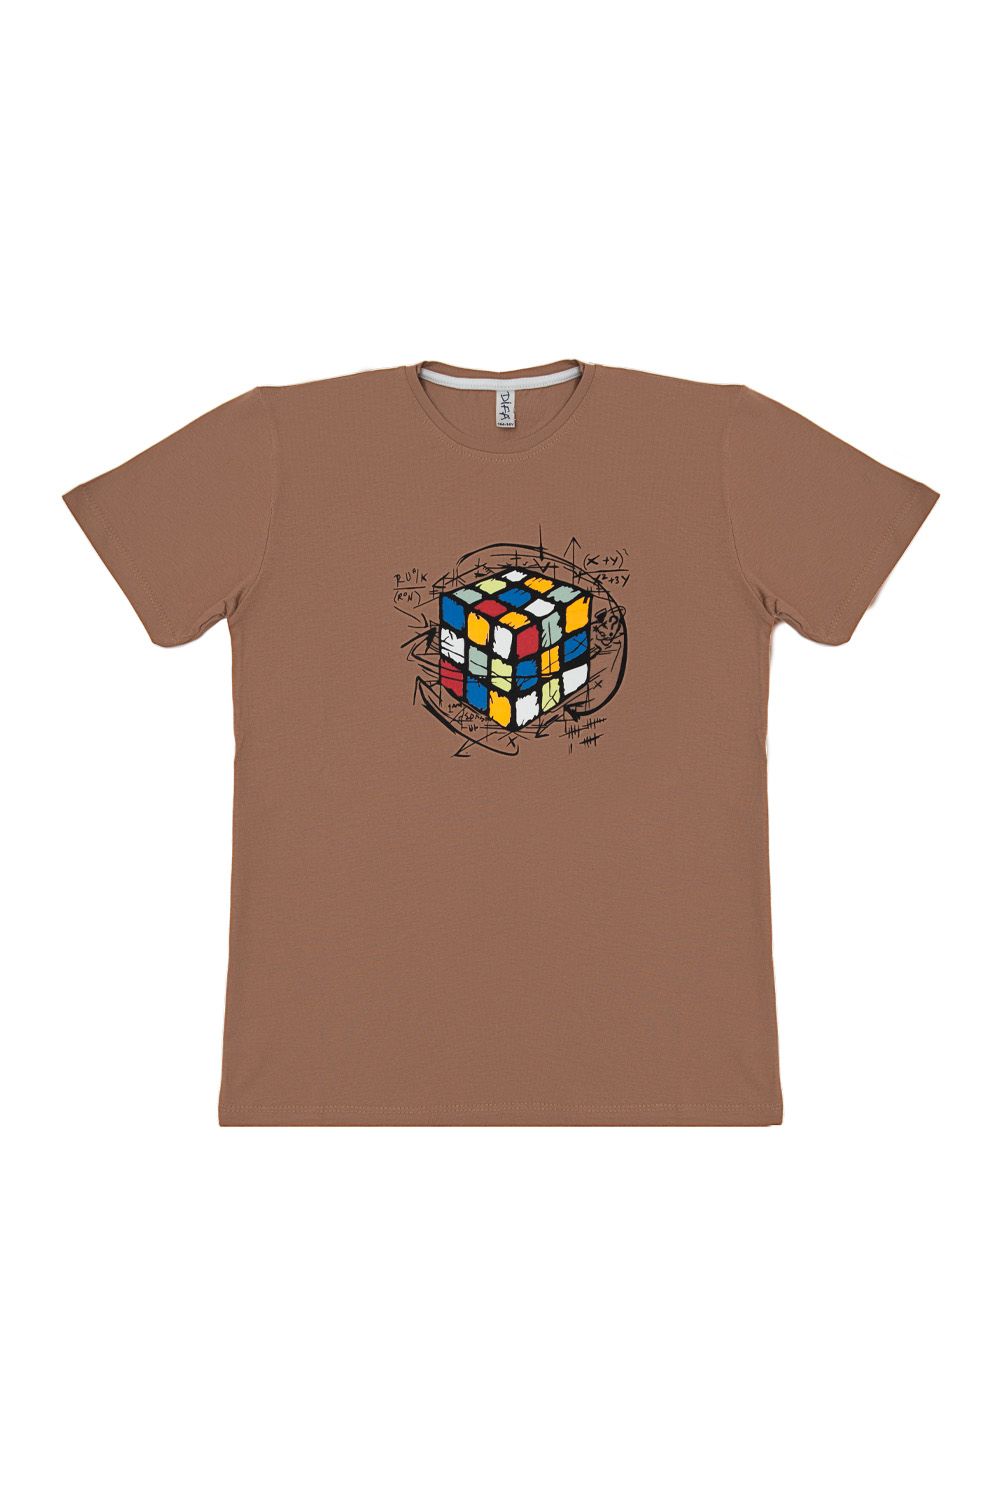 T-Shirt Kid Rubik’s Cube